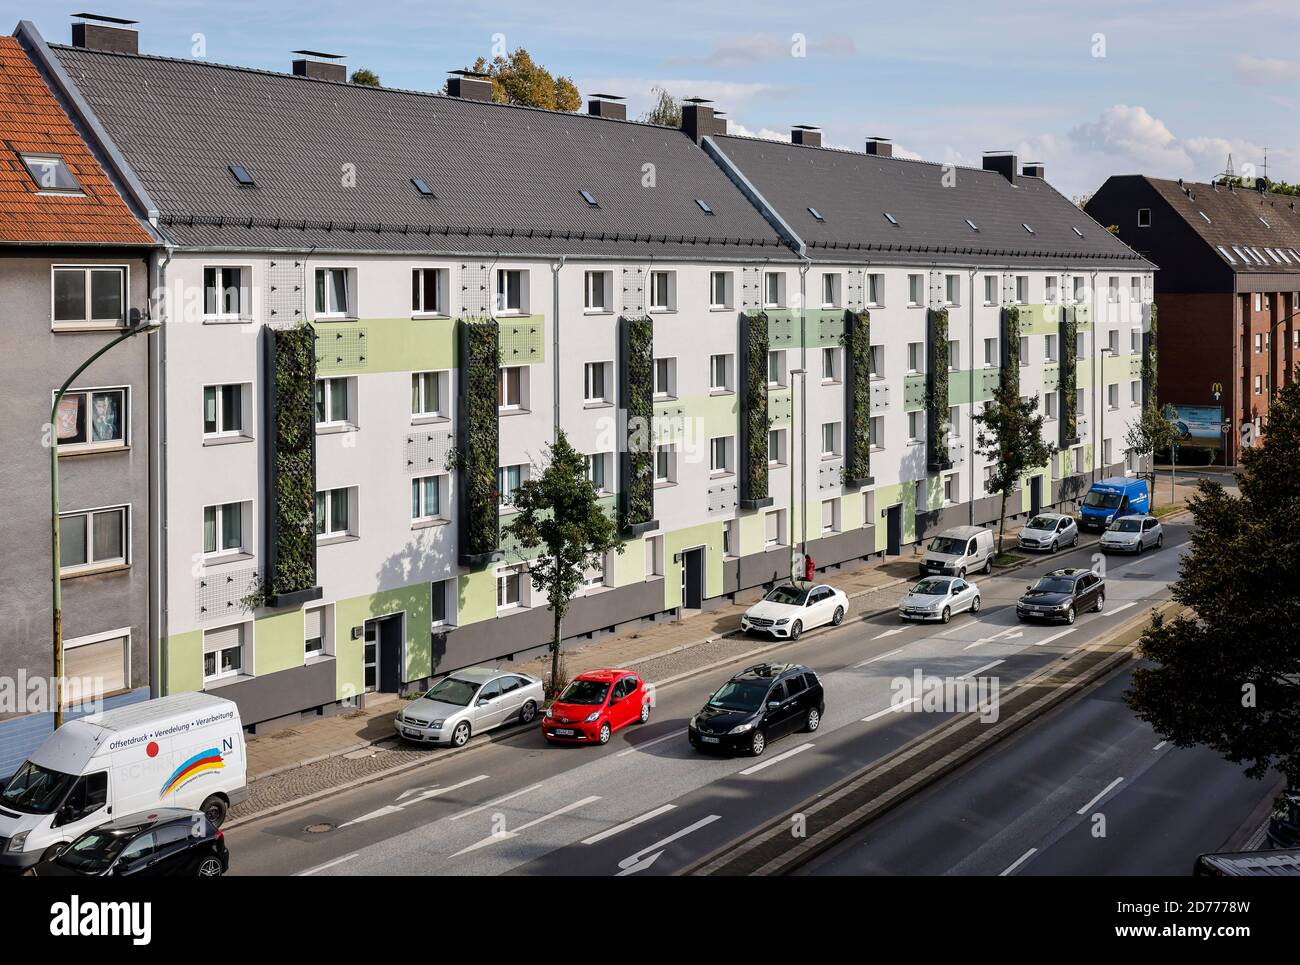 Essen, distretto della Ruhr, Renania Settentrionale-Vestfalia, Germania - facciata a parete che si verdi in case appena riorganizzate dell'Allbau Wohnungsbaugesellschaft Foto Stock